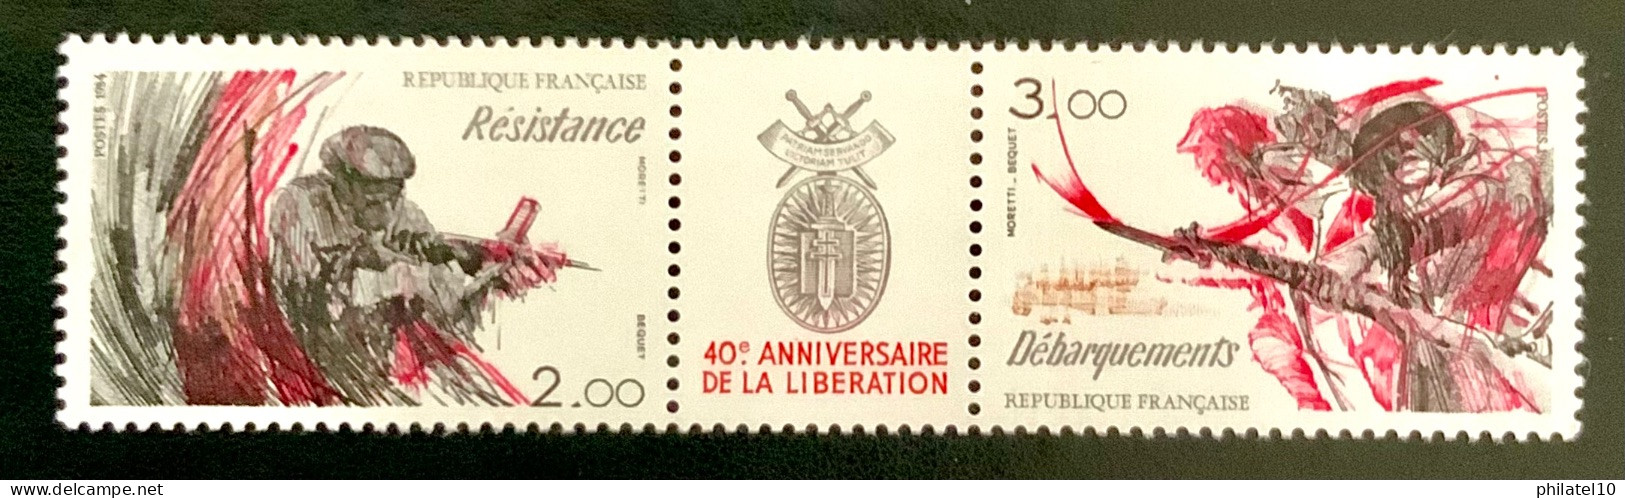 1984 FRANCE N 2313A 40eme ANNIVERSAIRE DE LA LIBÉRATION - NEUF** - Ungebraucht